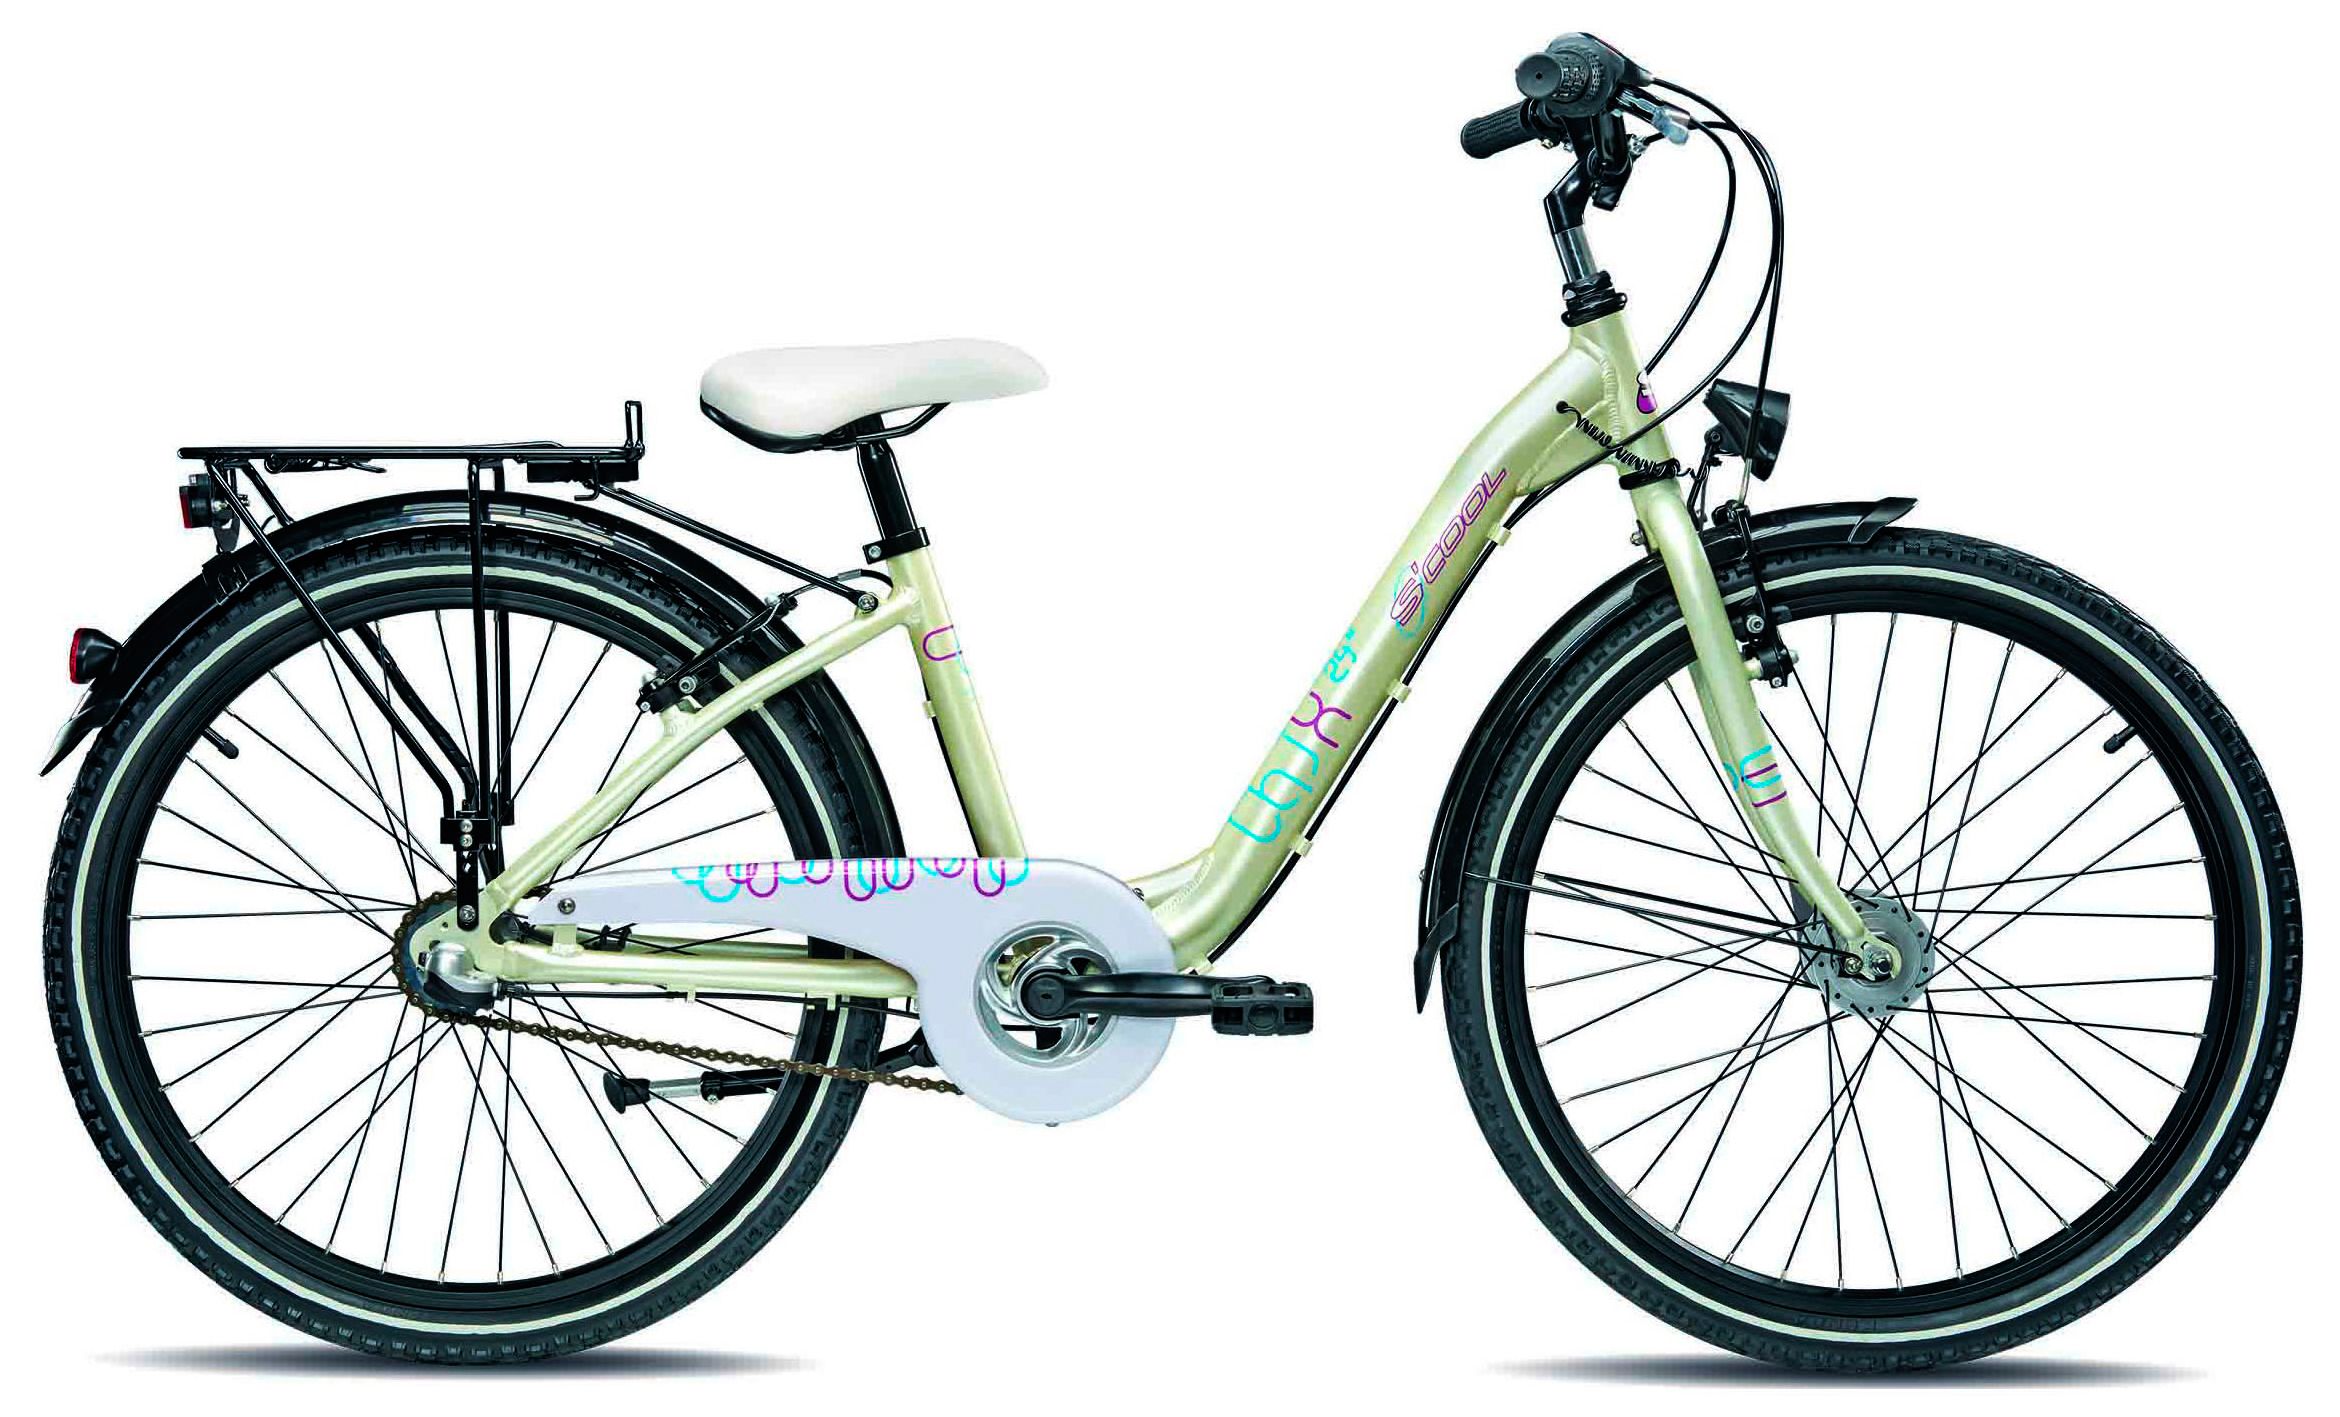  Отзывы о Детском велосипеде Scool chiX comp 24-3 2015